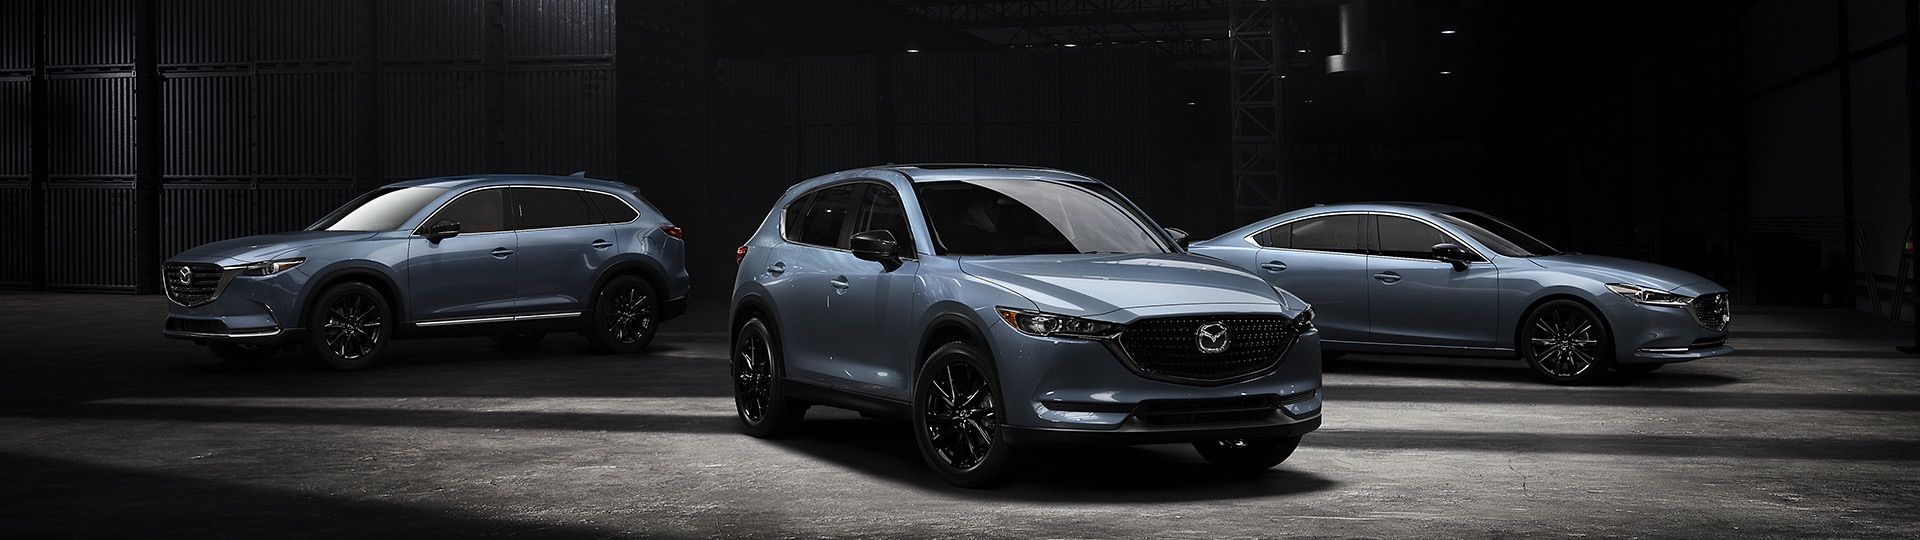 Mazda Canada Releases Details For Three Kuro Edition 2021 Mazdas: CX-5, CX-9, 6